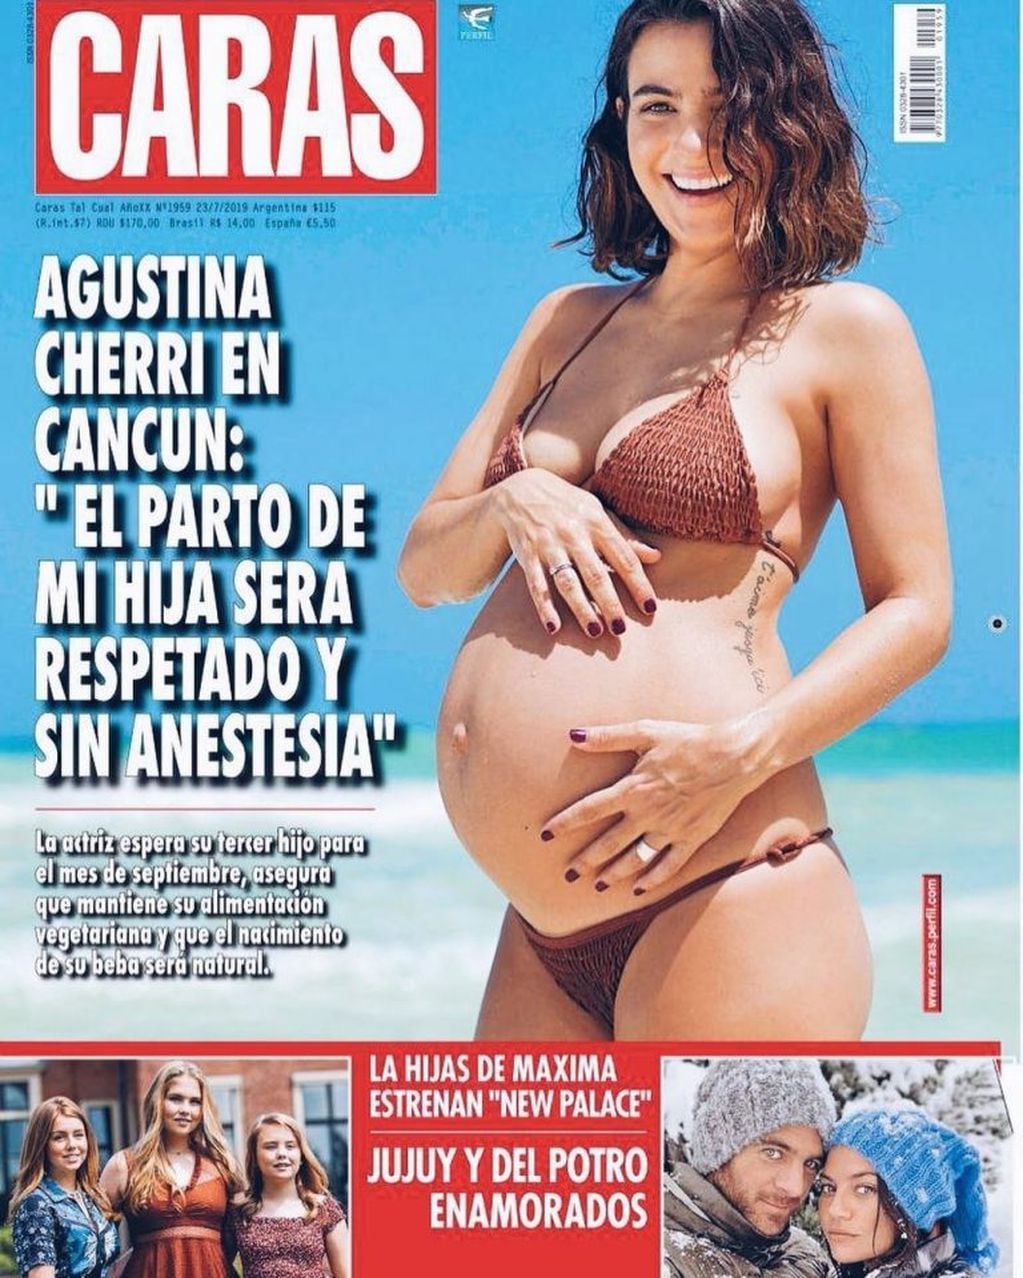 Agustina Cherri contó que tendrá un parto respetado en una entrevista con revista Caras (Foto: Instagram/ agustinacherriok)